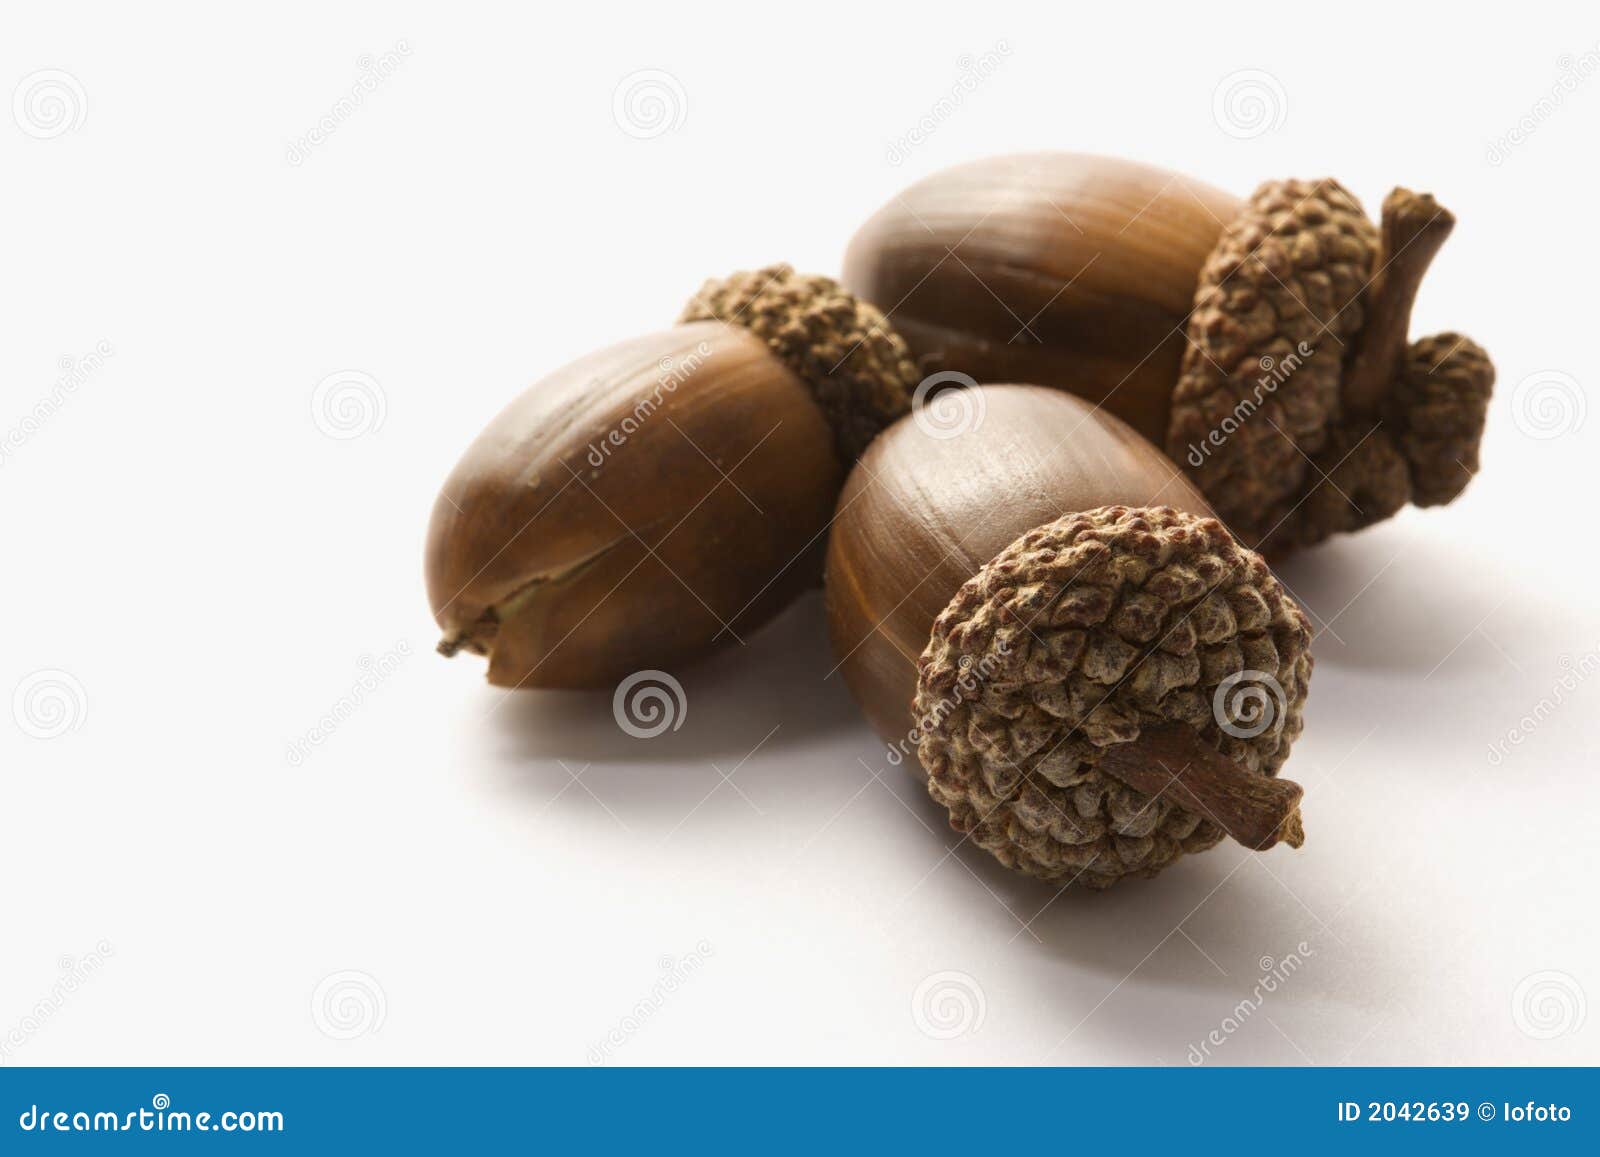 still life of acorns.